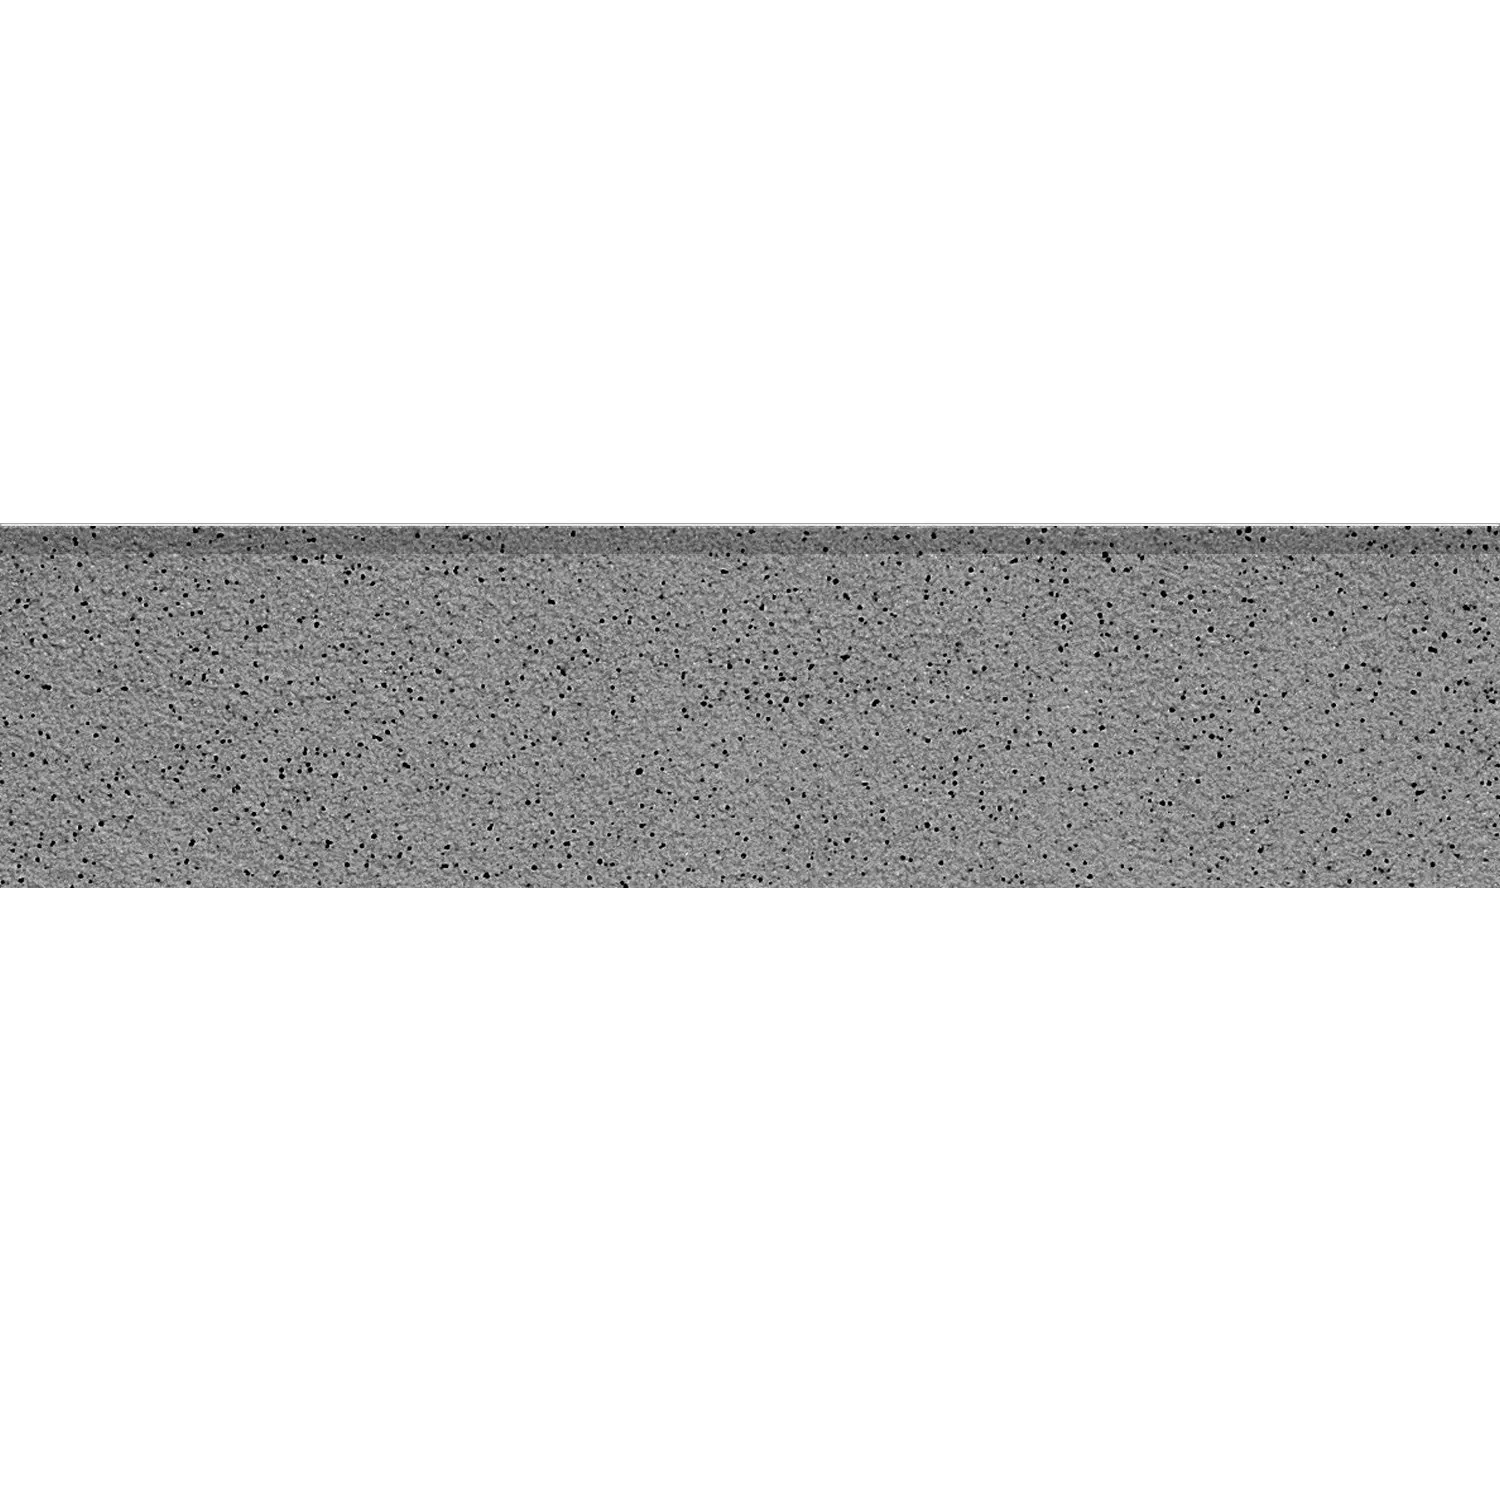 Σοβατεπί Ψιλό Σιτάρι Πλακάκι Ανθρακίτης 30x7cm